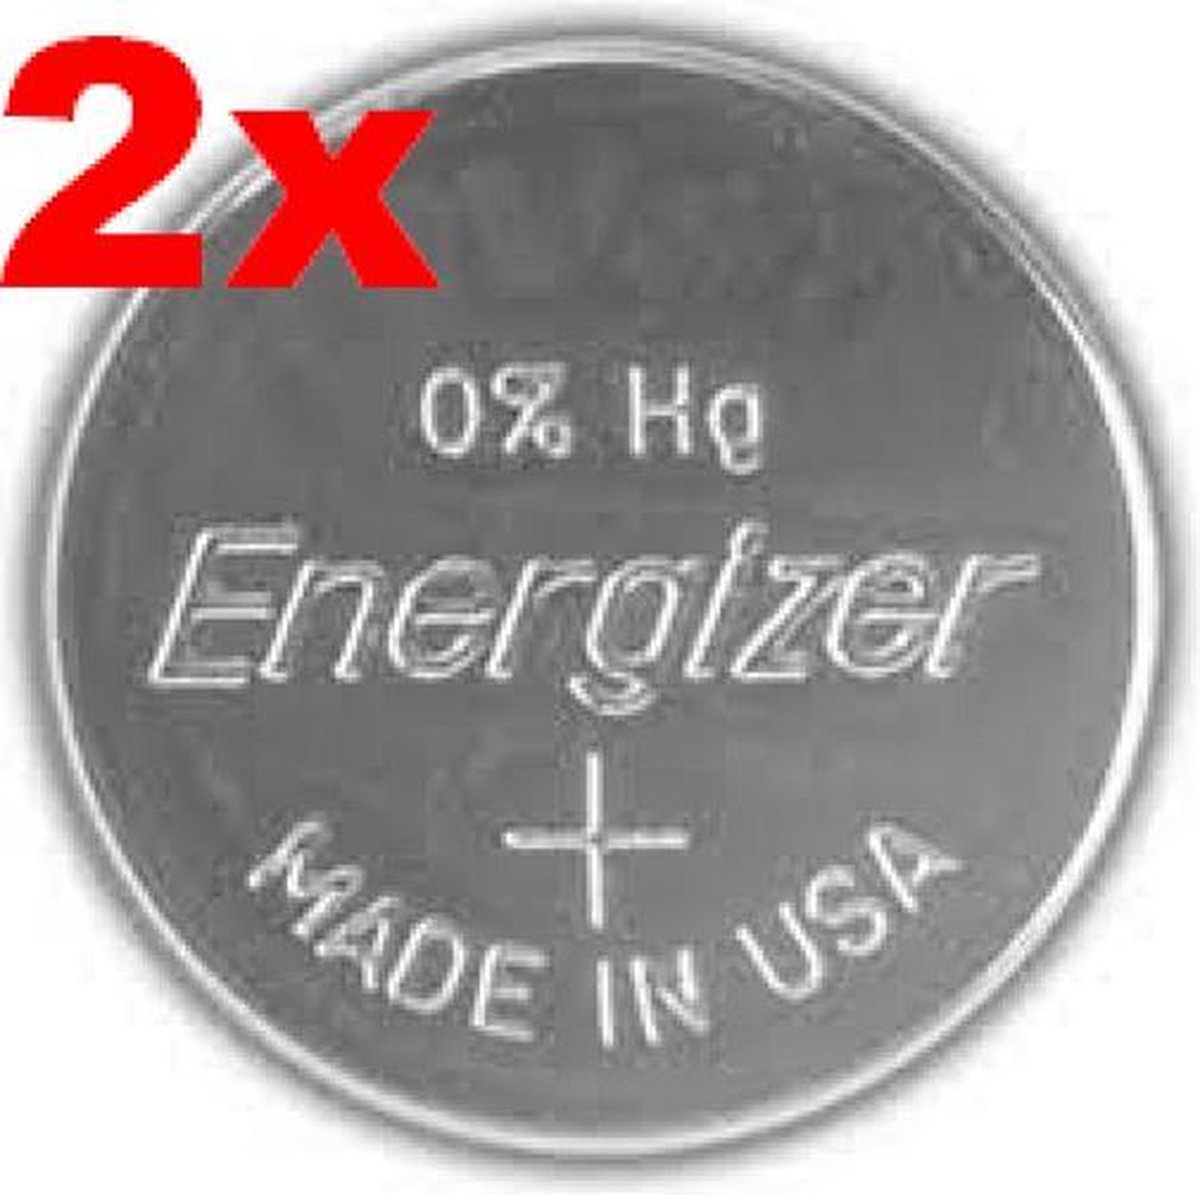 Energizer 357 / 303 / SR44 zilveroxide knoopcel horlogebatterij 2 (twee) stuks